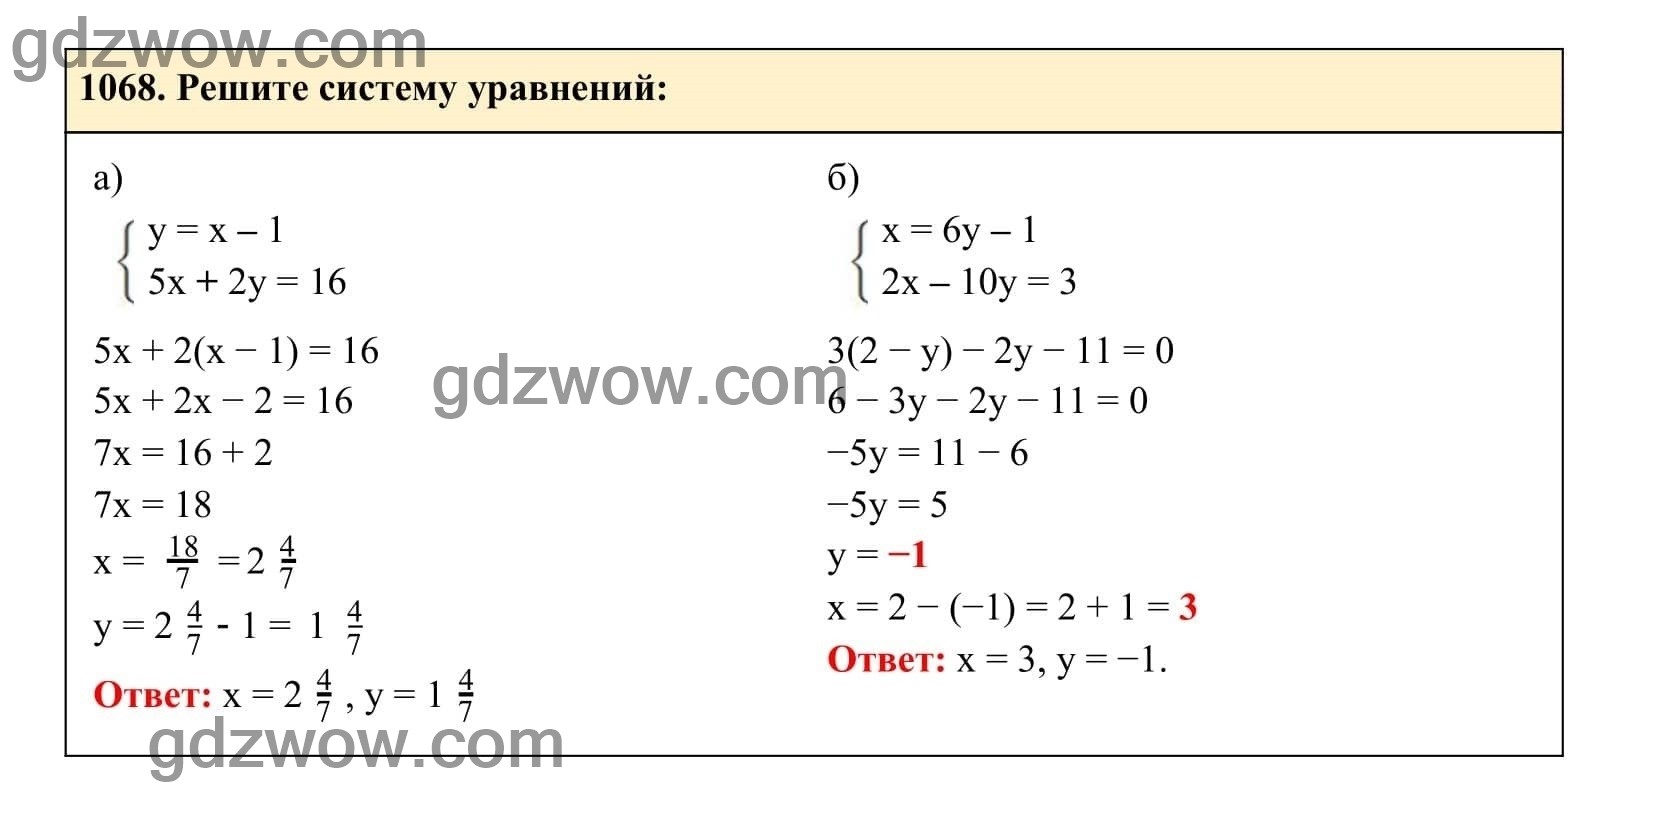 Упражнение 1068 - ГДЗ по Алгебре 7 класс Учебник Макарычев (решебник) - GDZwow